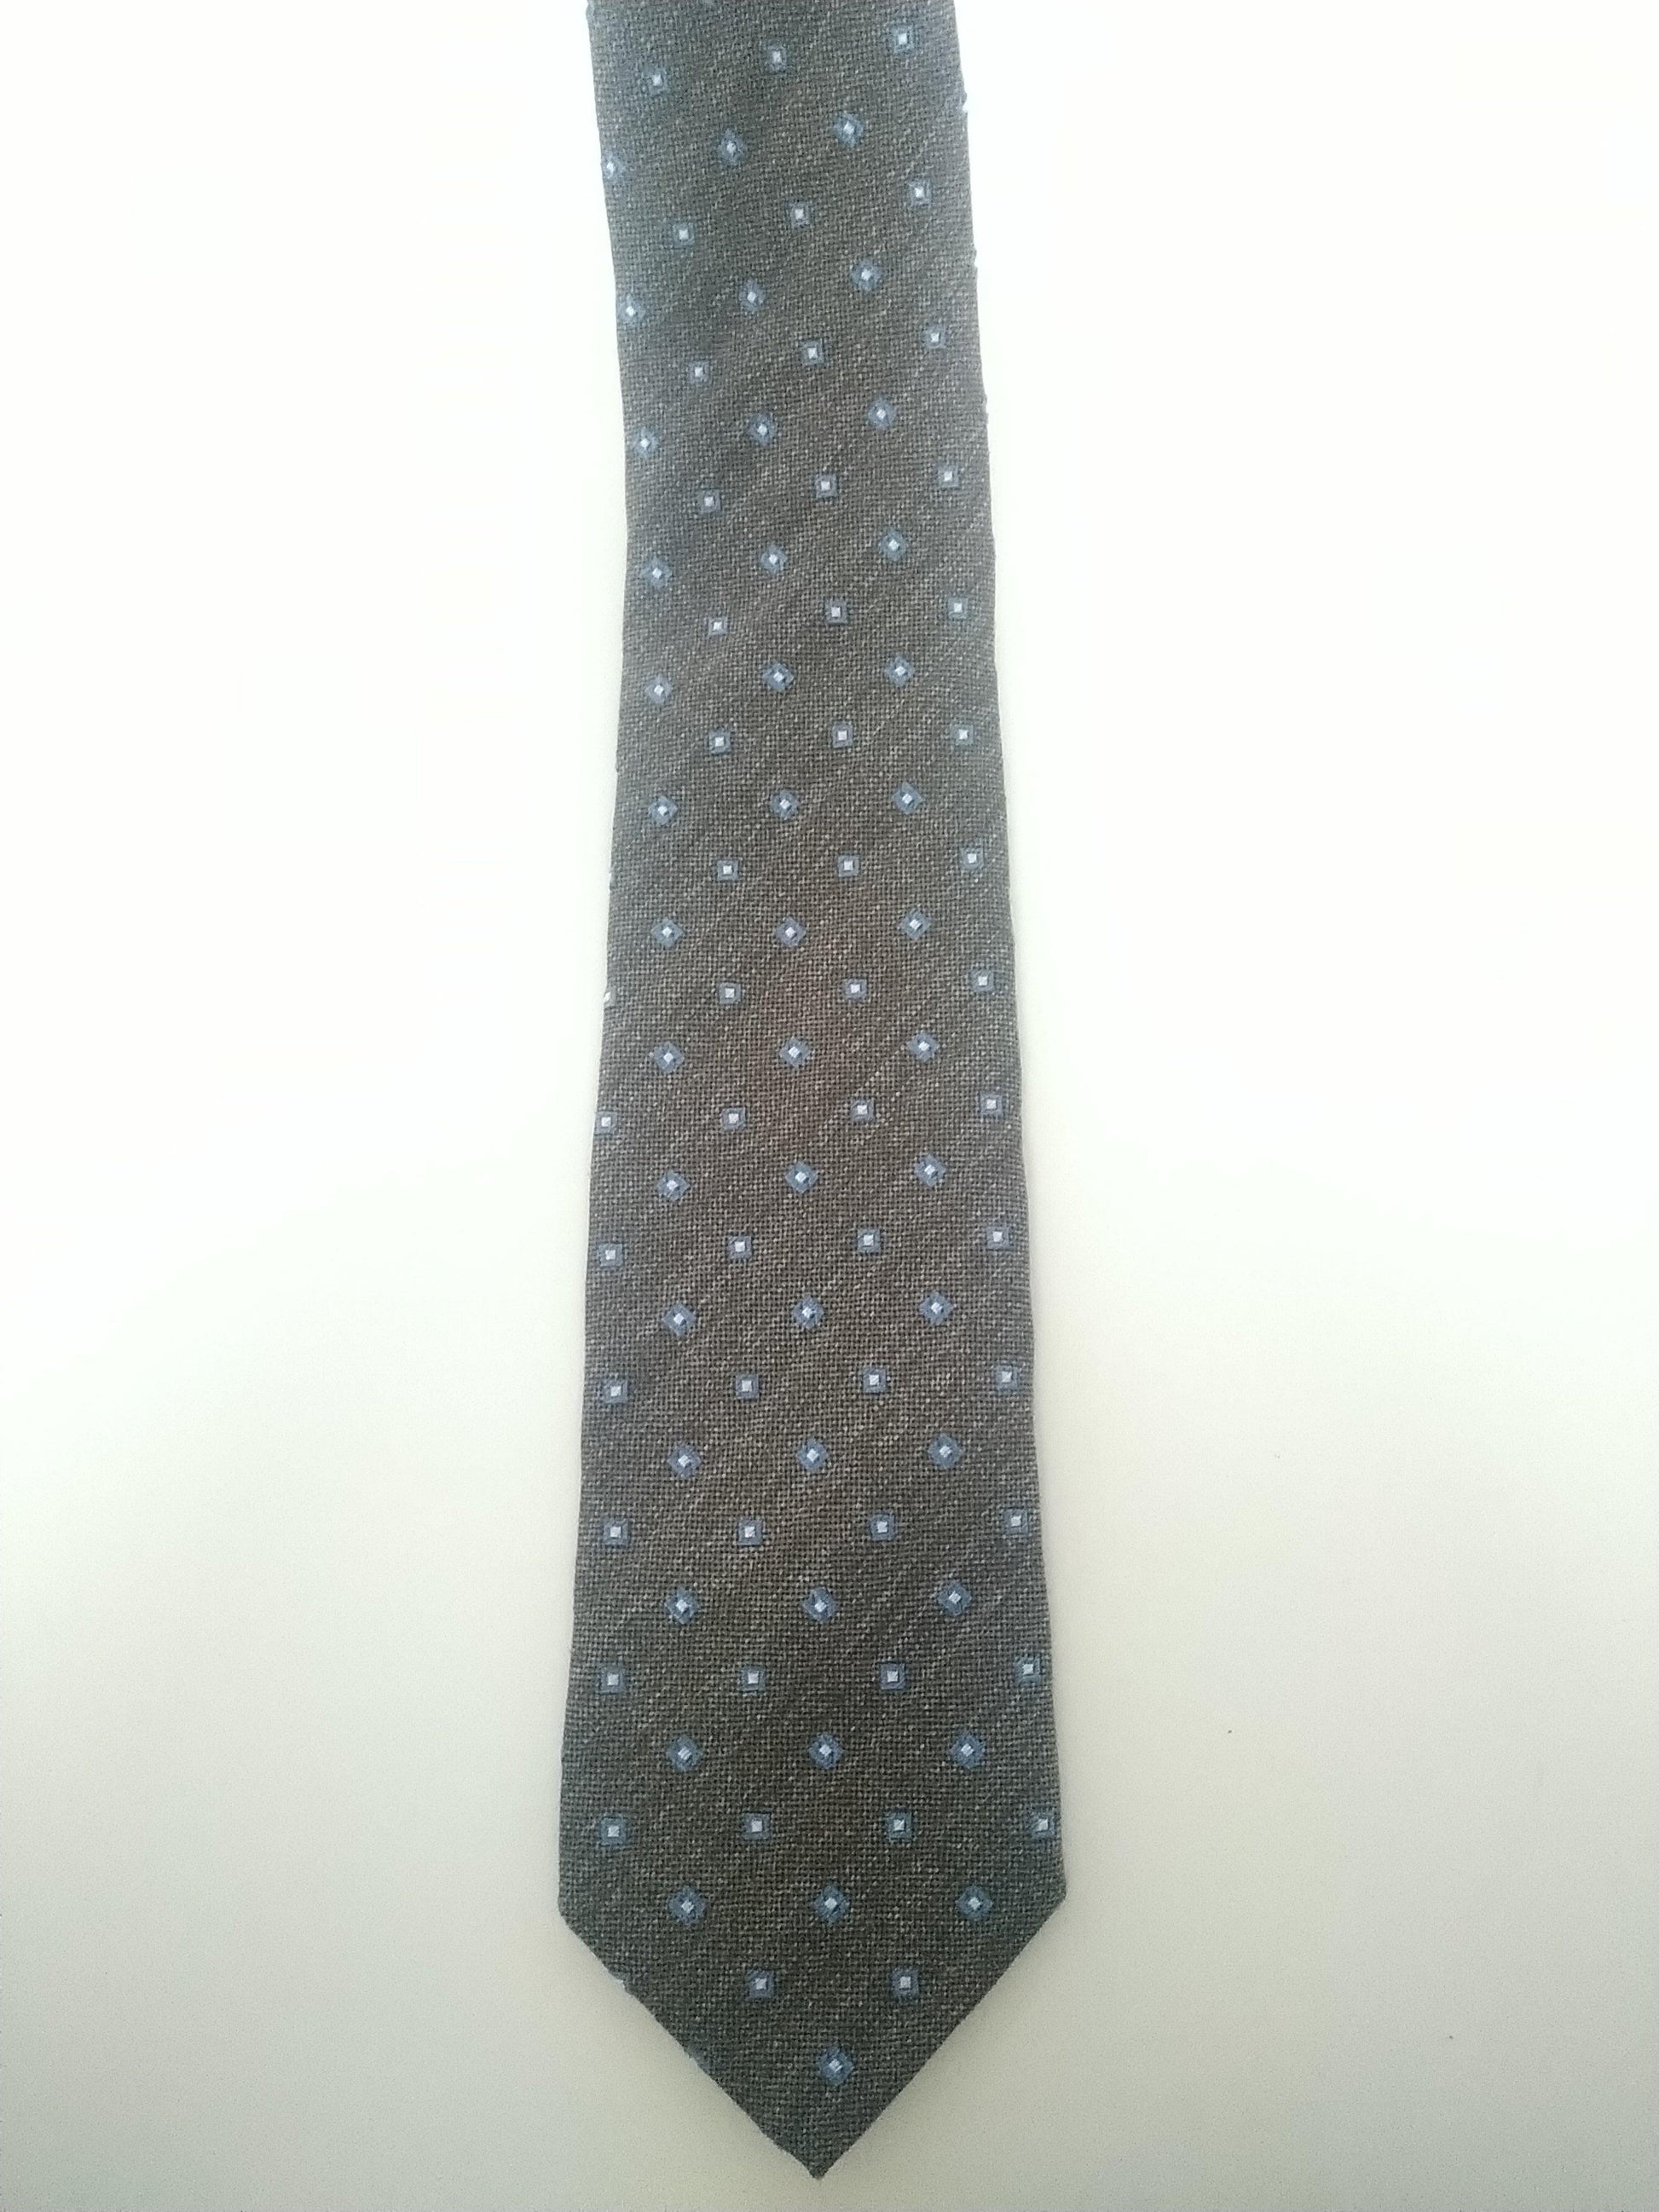 Andrew's Ties / A & D Milano stropdas. Antraciet met blauw witte puntjes. Zijde - EcoGents